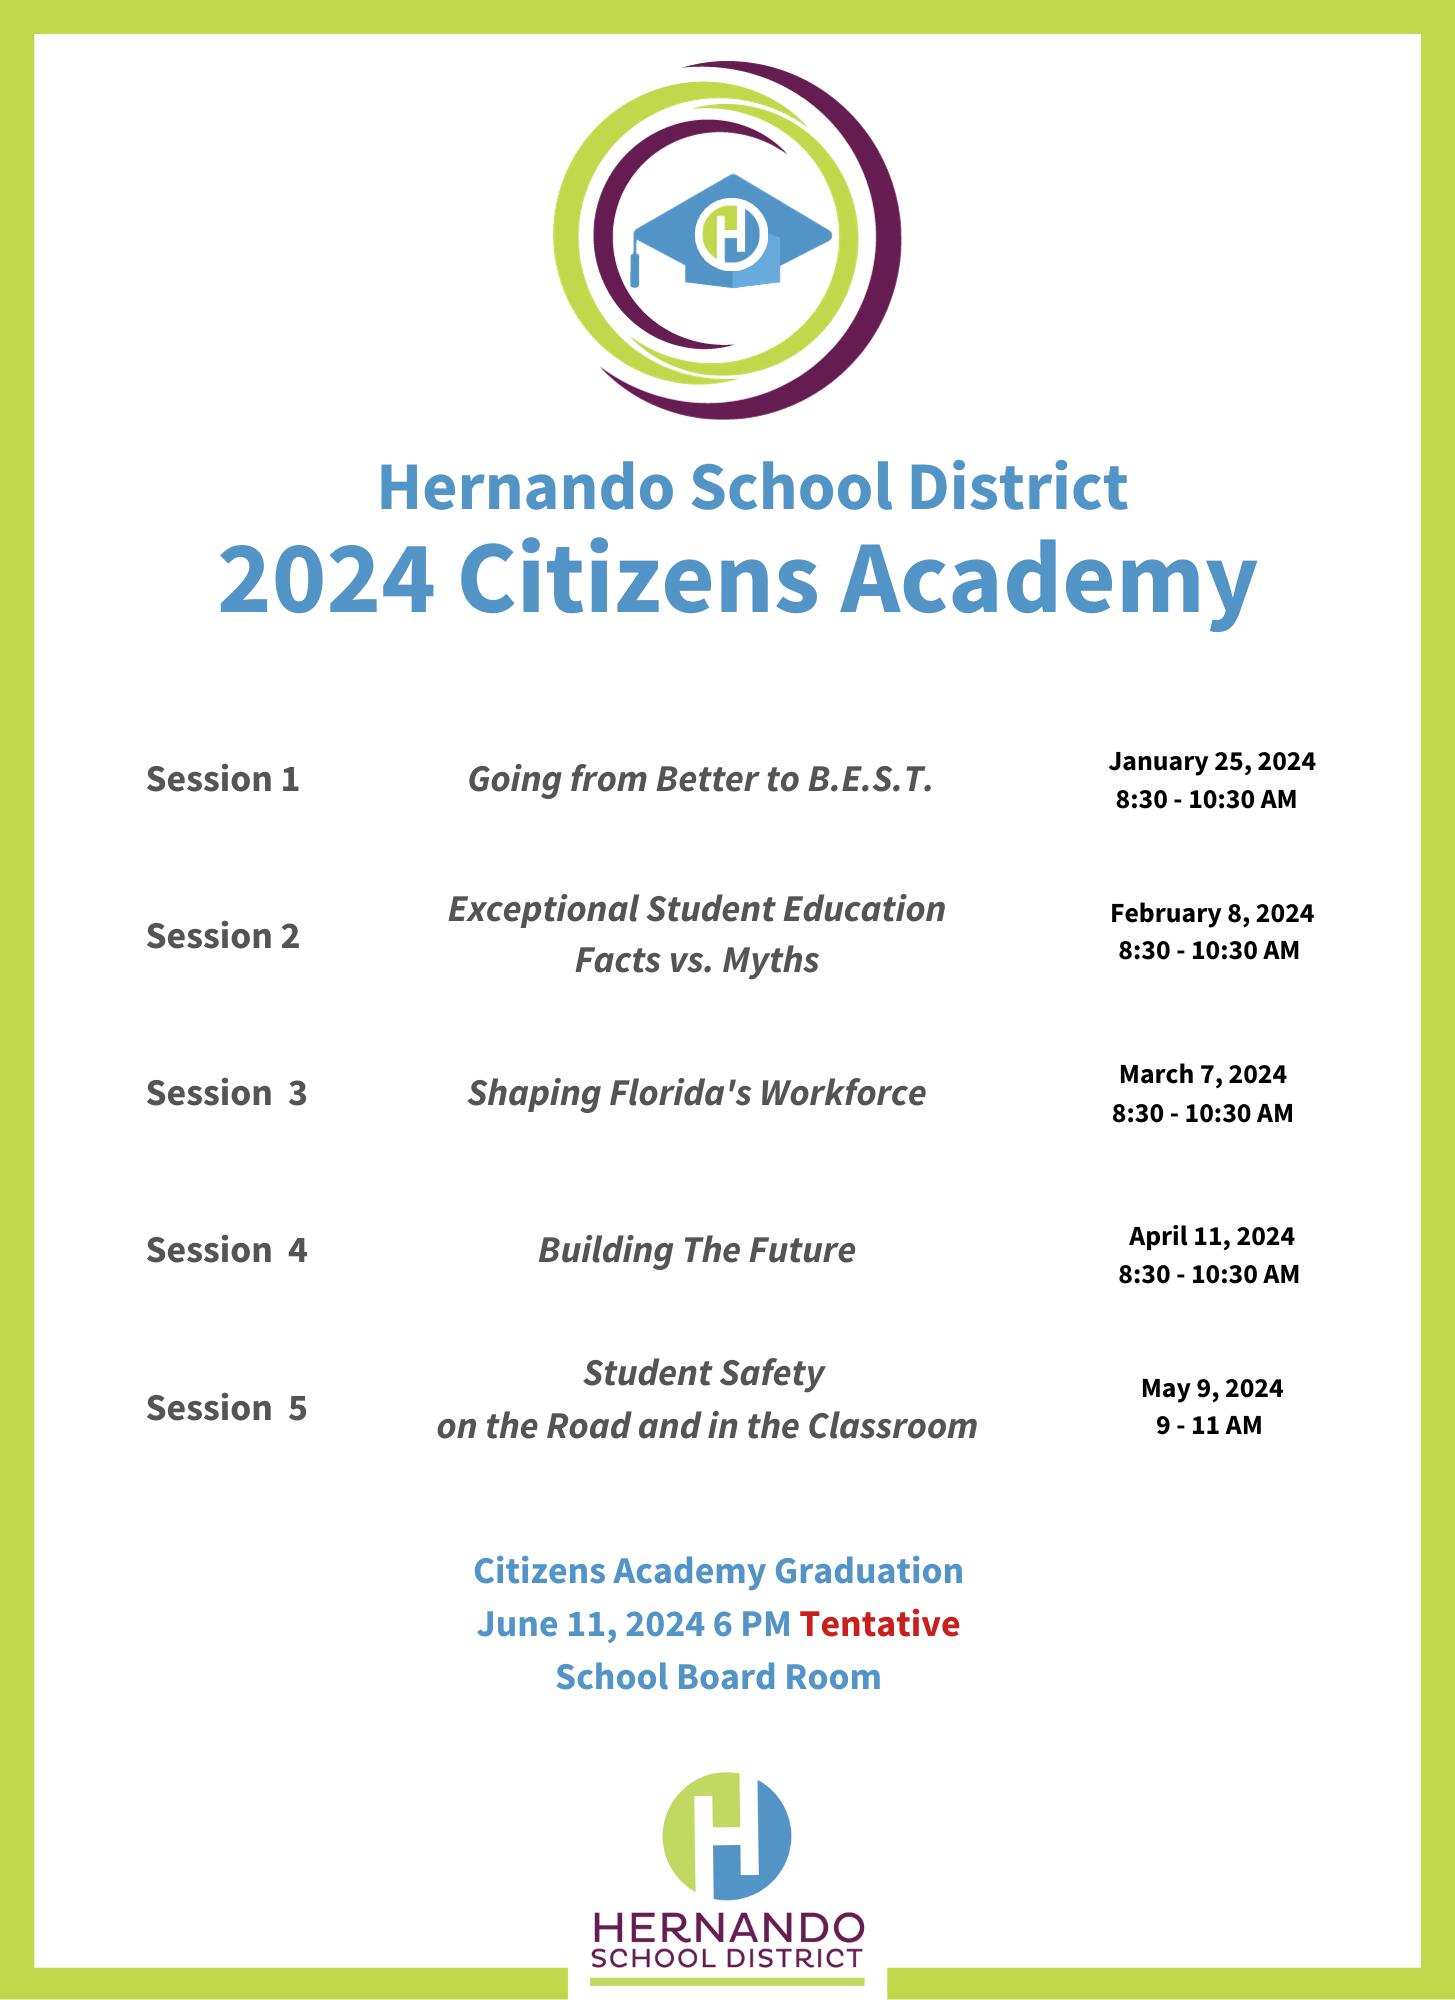 Citizen's Academy Scheudle